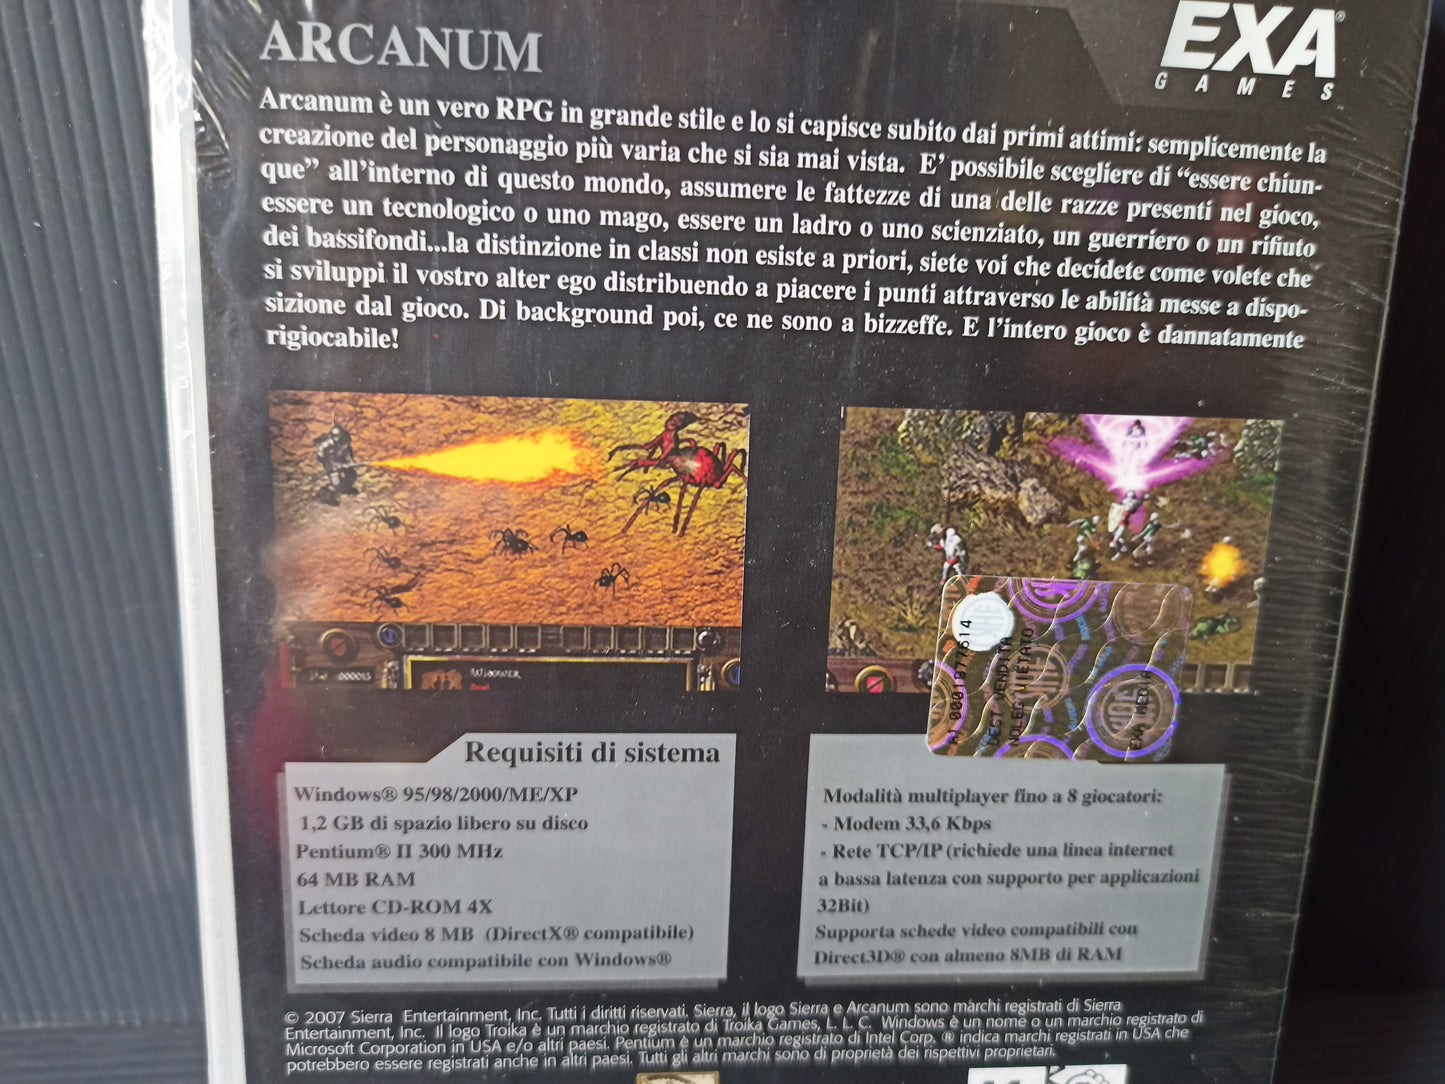 Arganum PC Video Game, Sealed